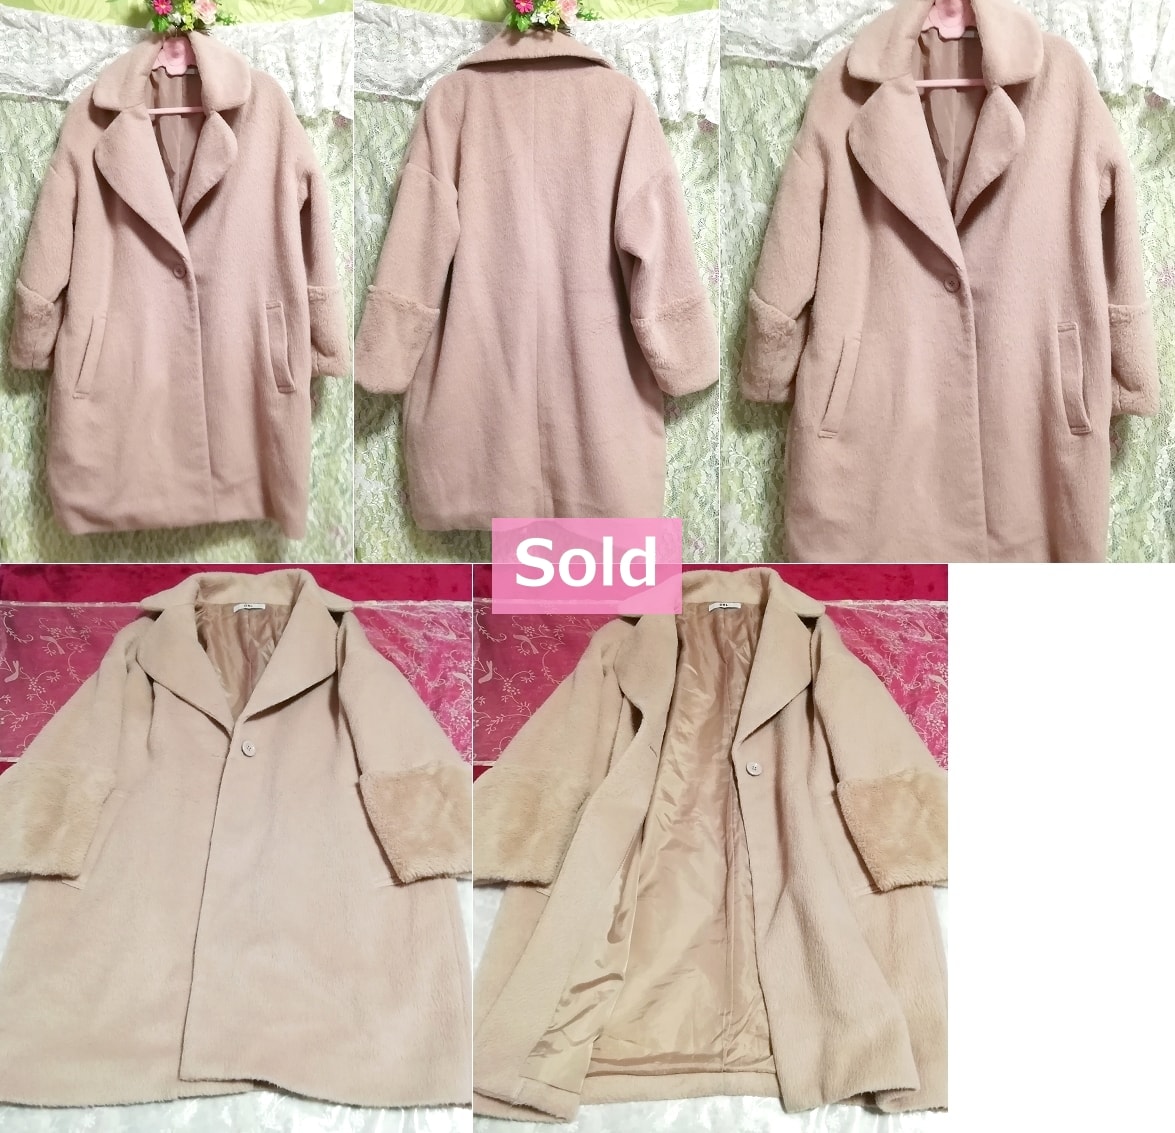 핑크 베이지 푹신한 롱 코트 / 재킷 / 겉옷 핑크 베이지 푹신한 롱 코트 / 재킷